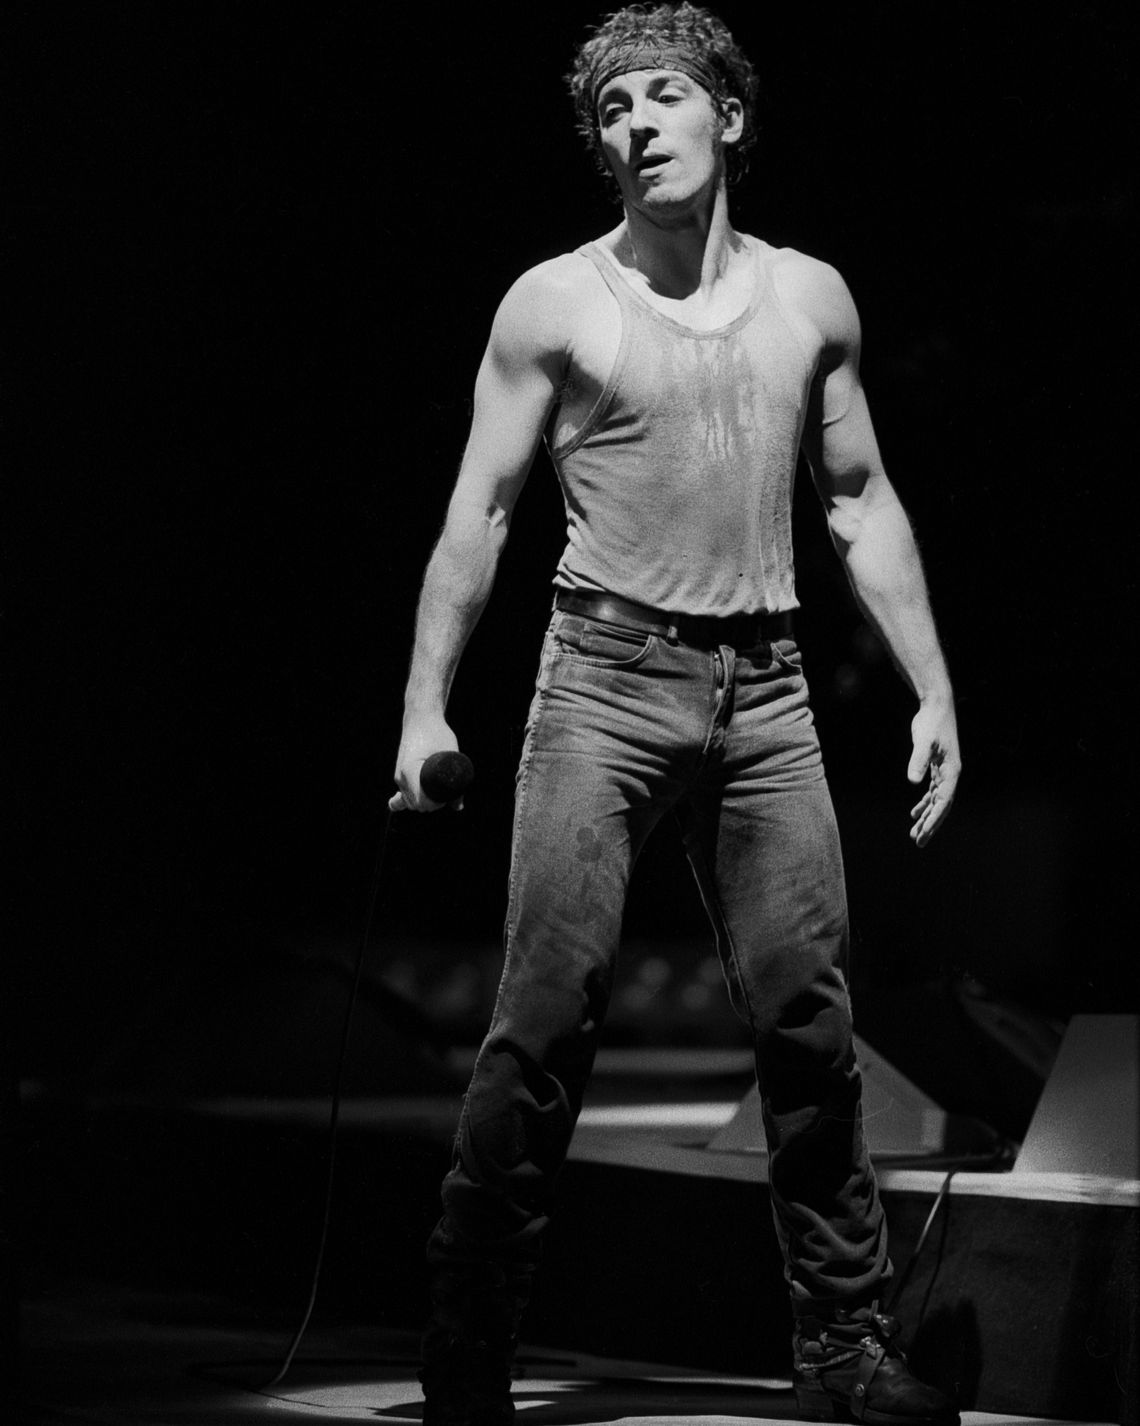 Bruce Springsteen Jeans | vlr.eng.br